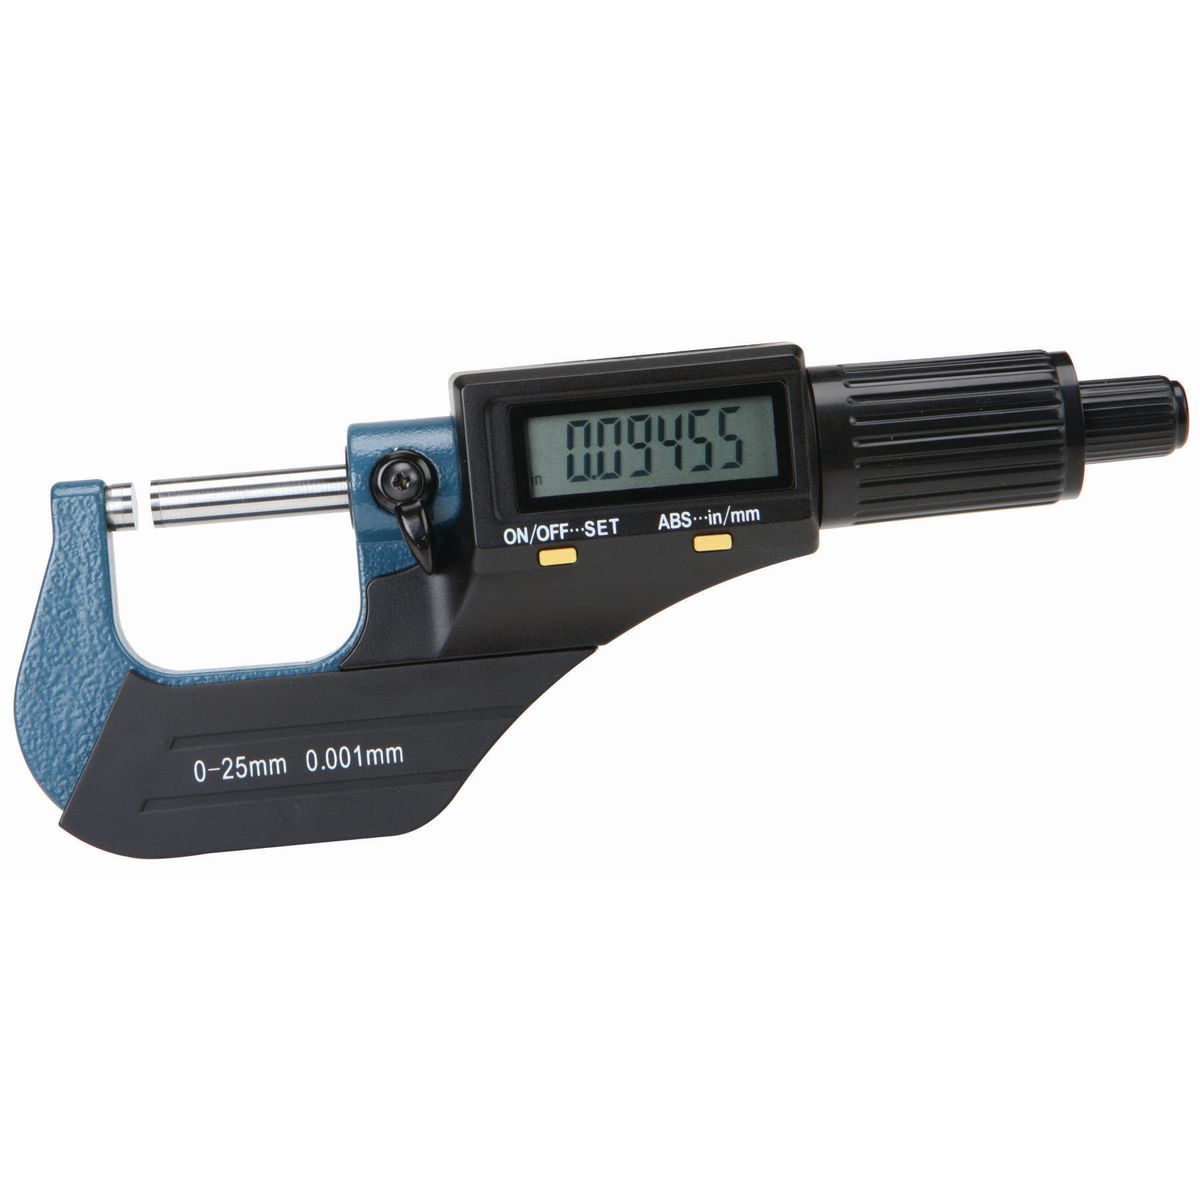 PITTSBURGH Digital Micrometer - Item 63647 / 68305